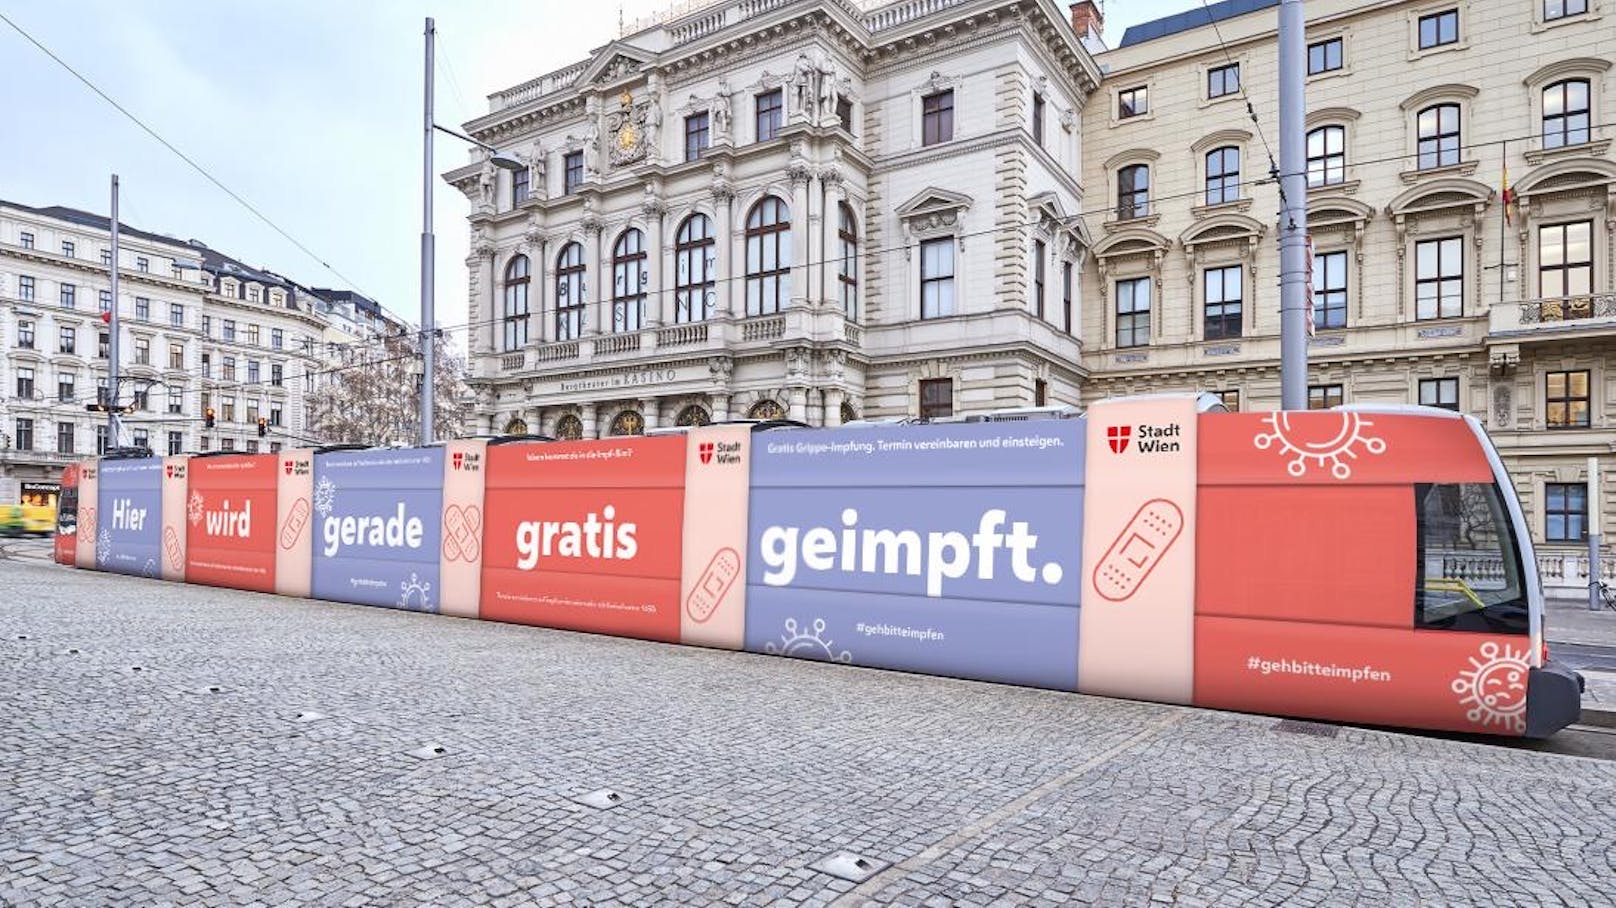 Die Impf-Bim ist ab Donnerstag an sechs Standorten in Wien unterwegs, erste Station: Karlsplatz.